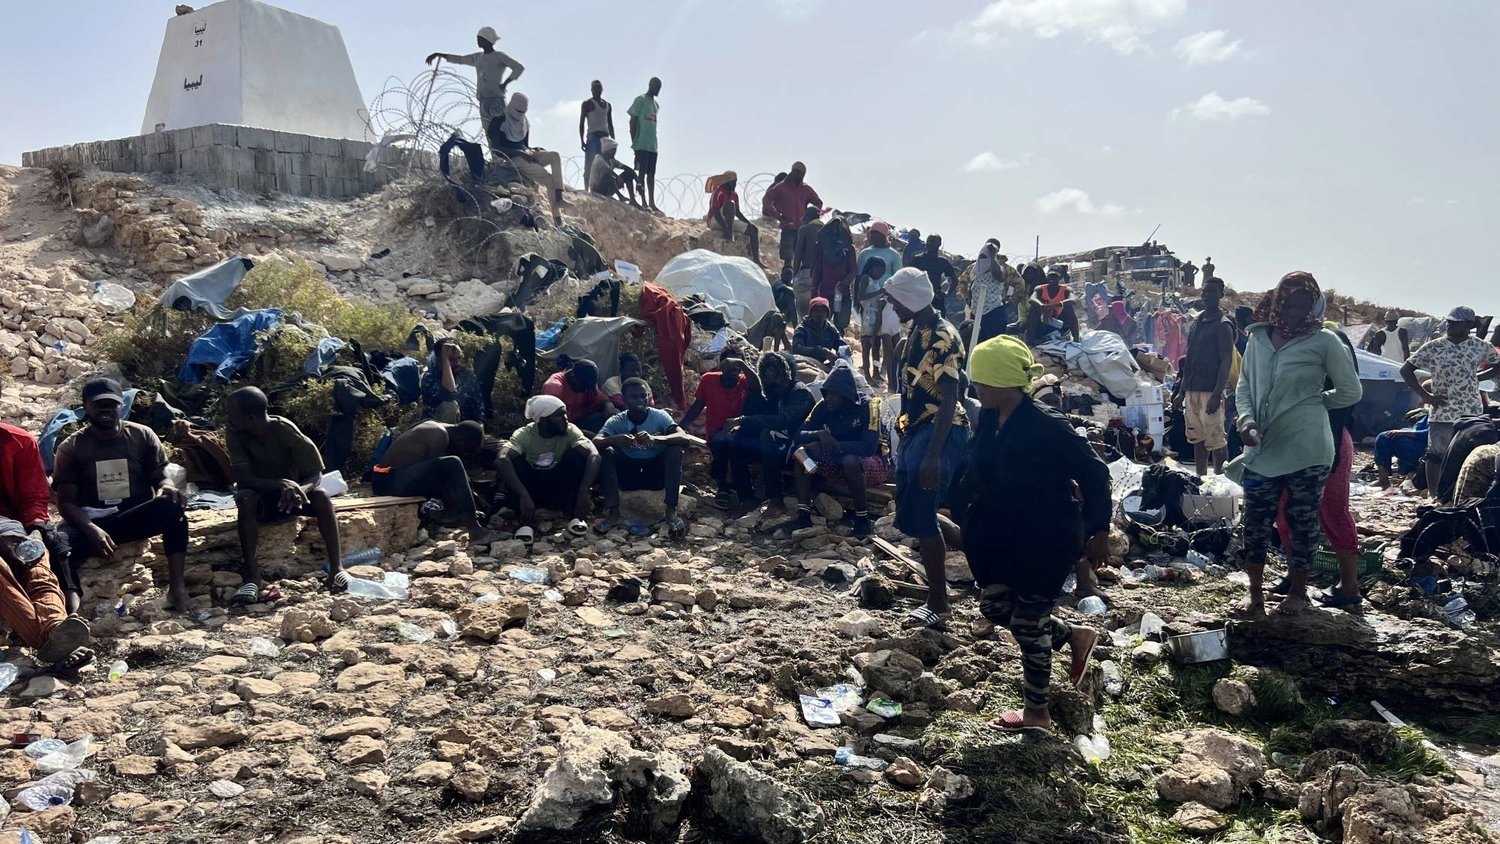 الأمم المتحدة تندّد بـ«مأساة» يعيشها مهاجرون عند الحدود بين تونس وليبيا